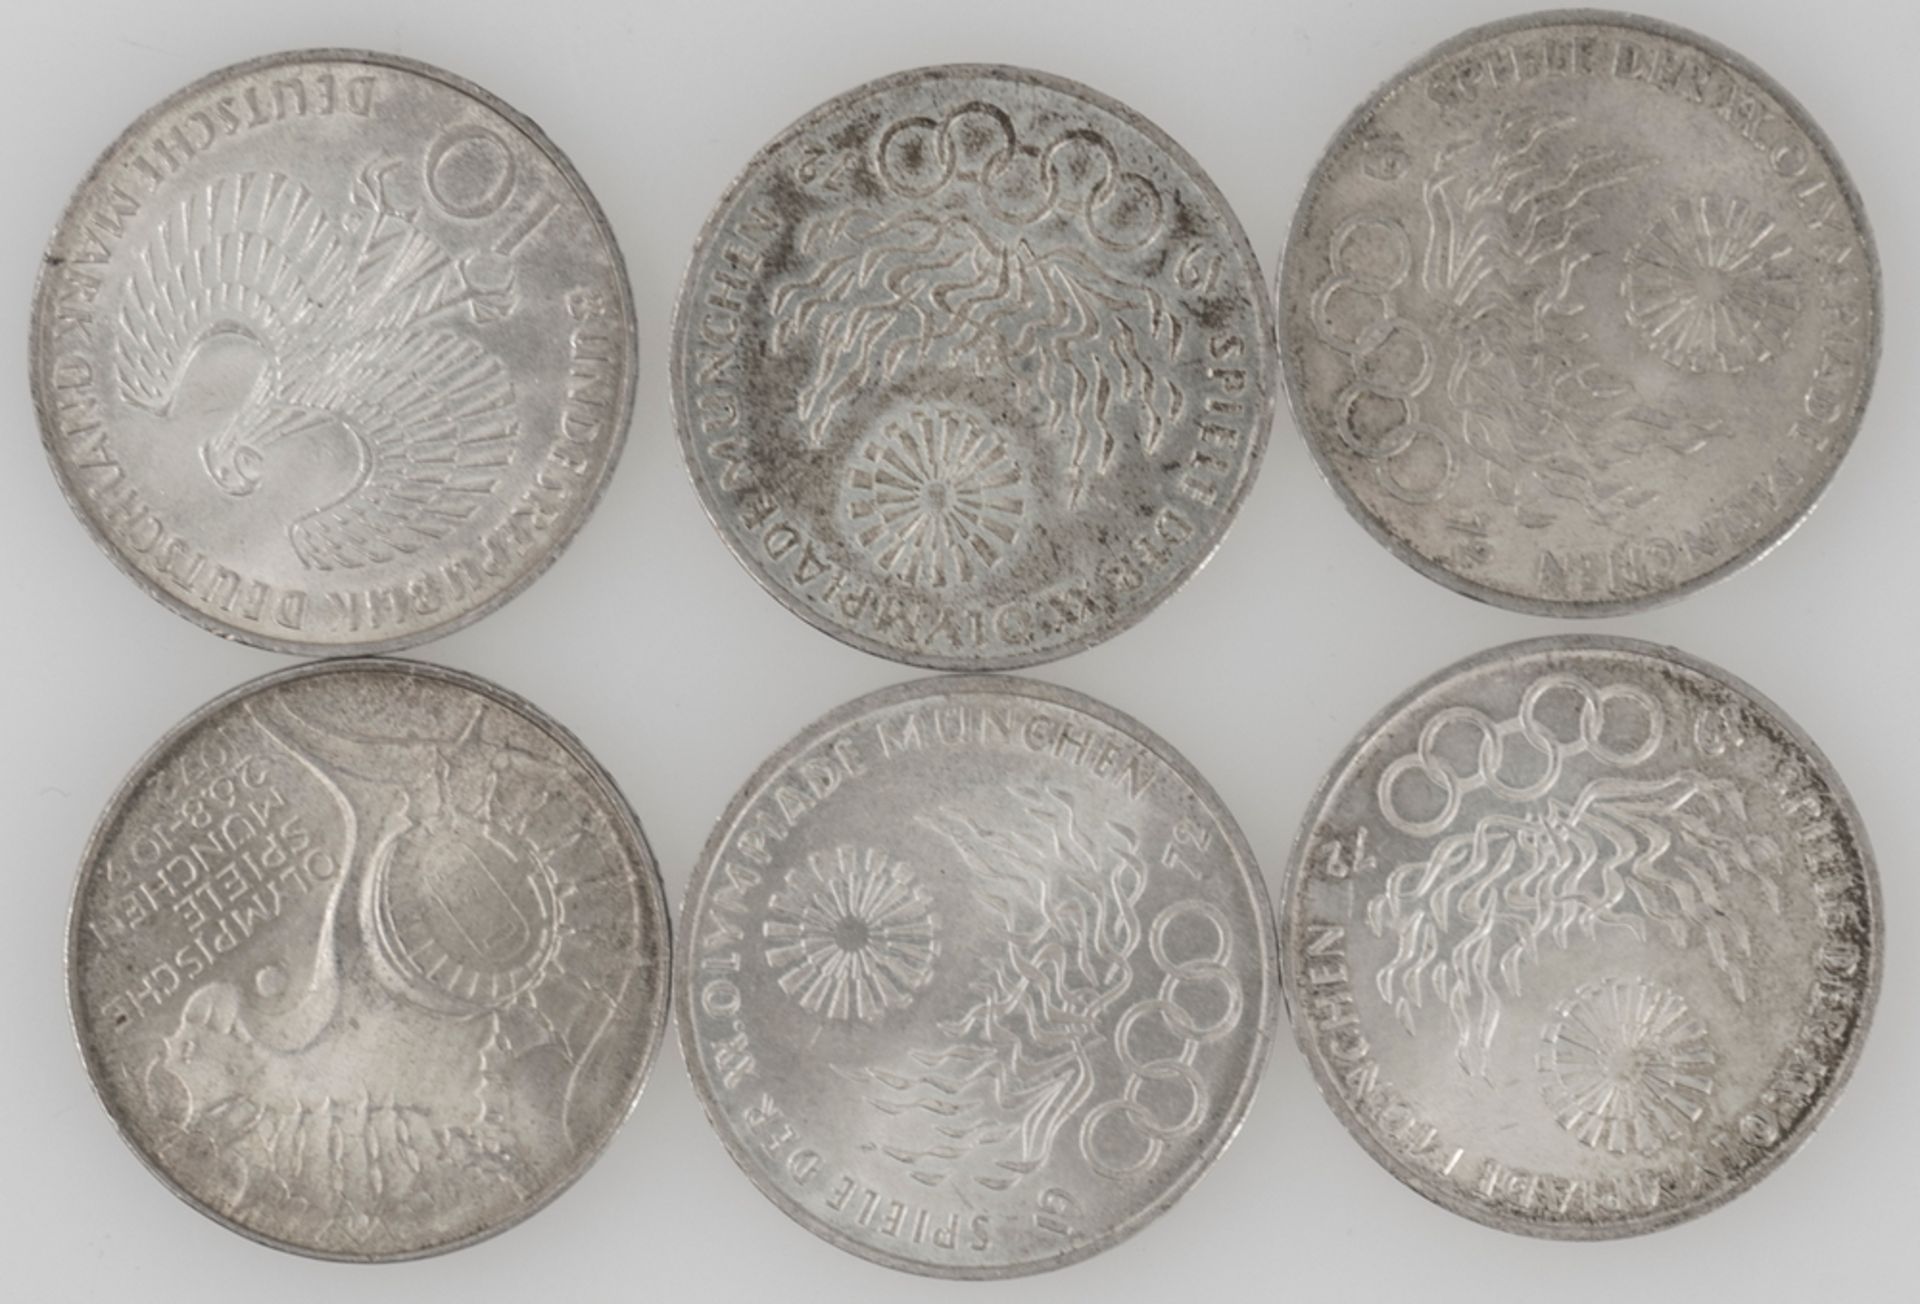 Deutschland 1972, Lot 10 DM - Silbermünzen "Olympische Spiele". Erhaltung: ss. - Image 2 of 2